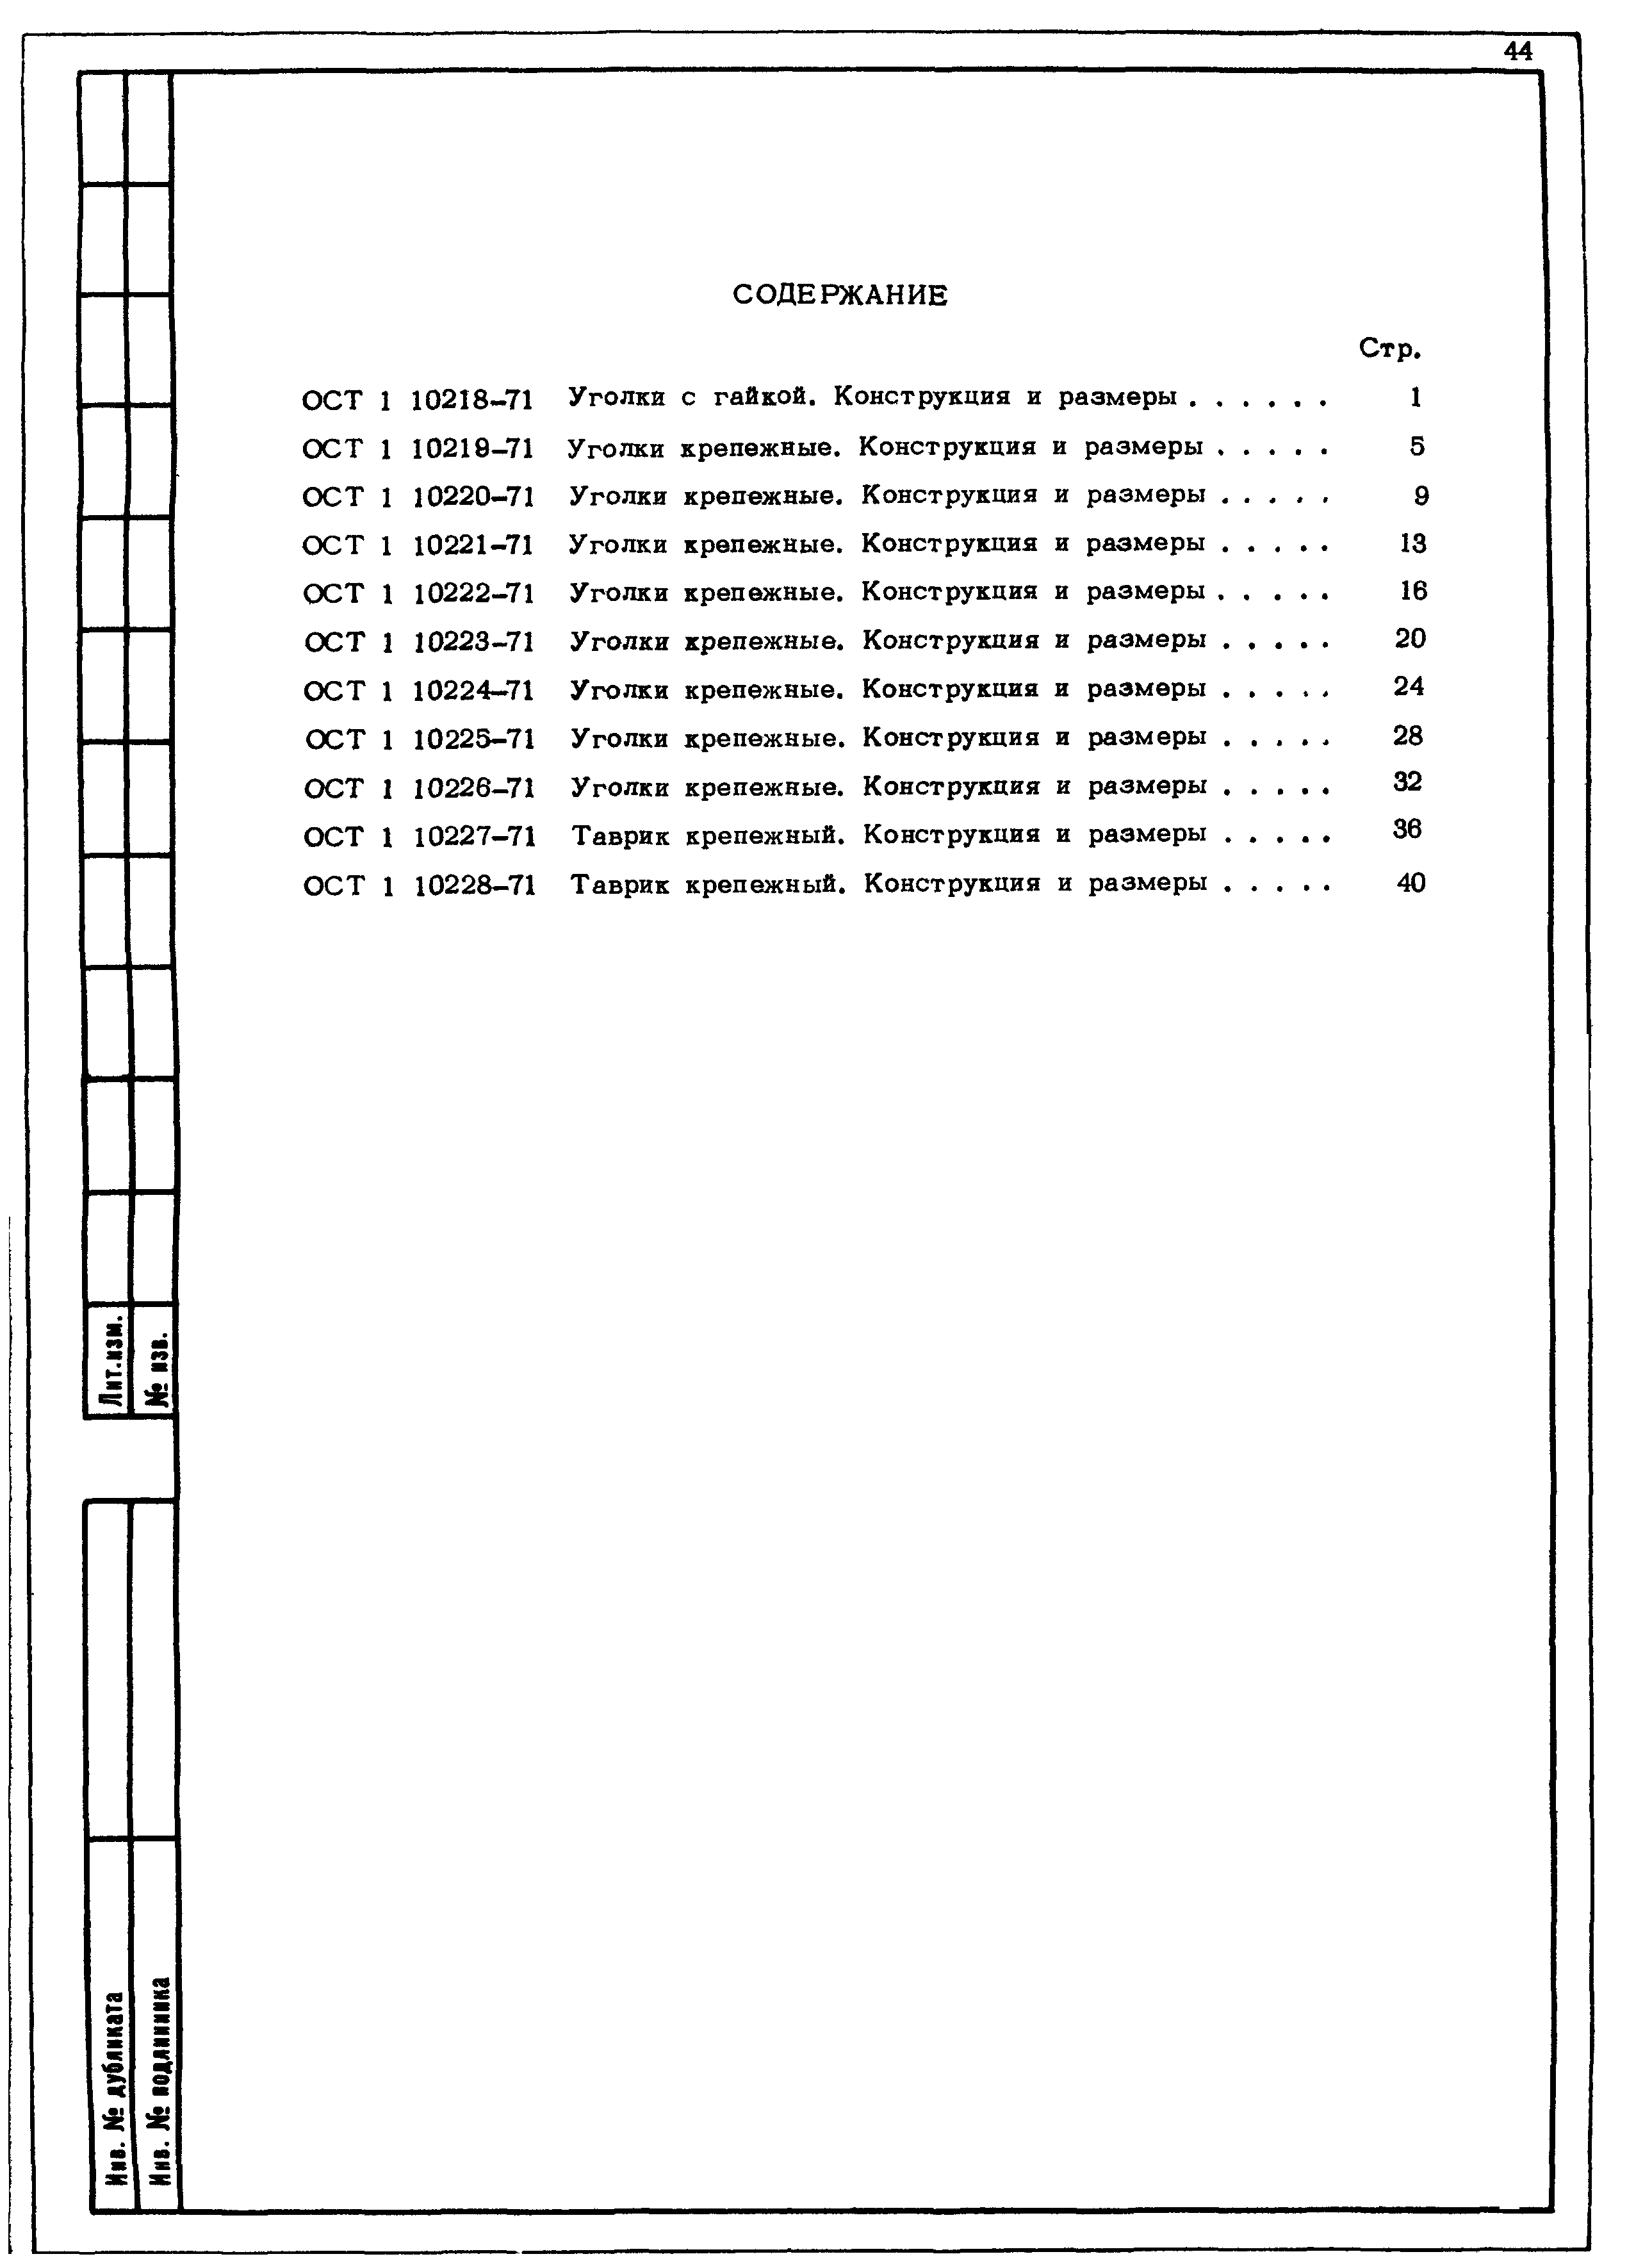 ОСТ 1 10228-71